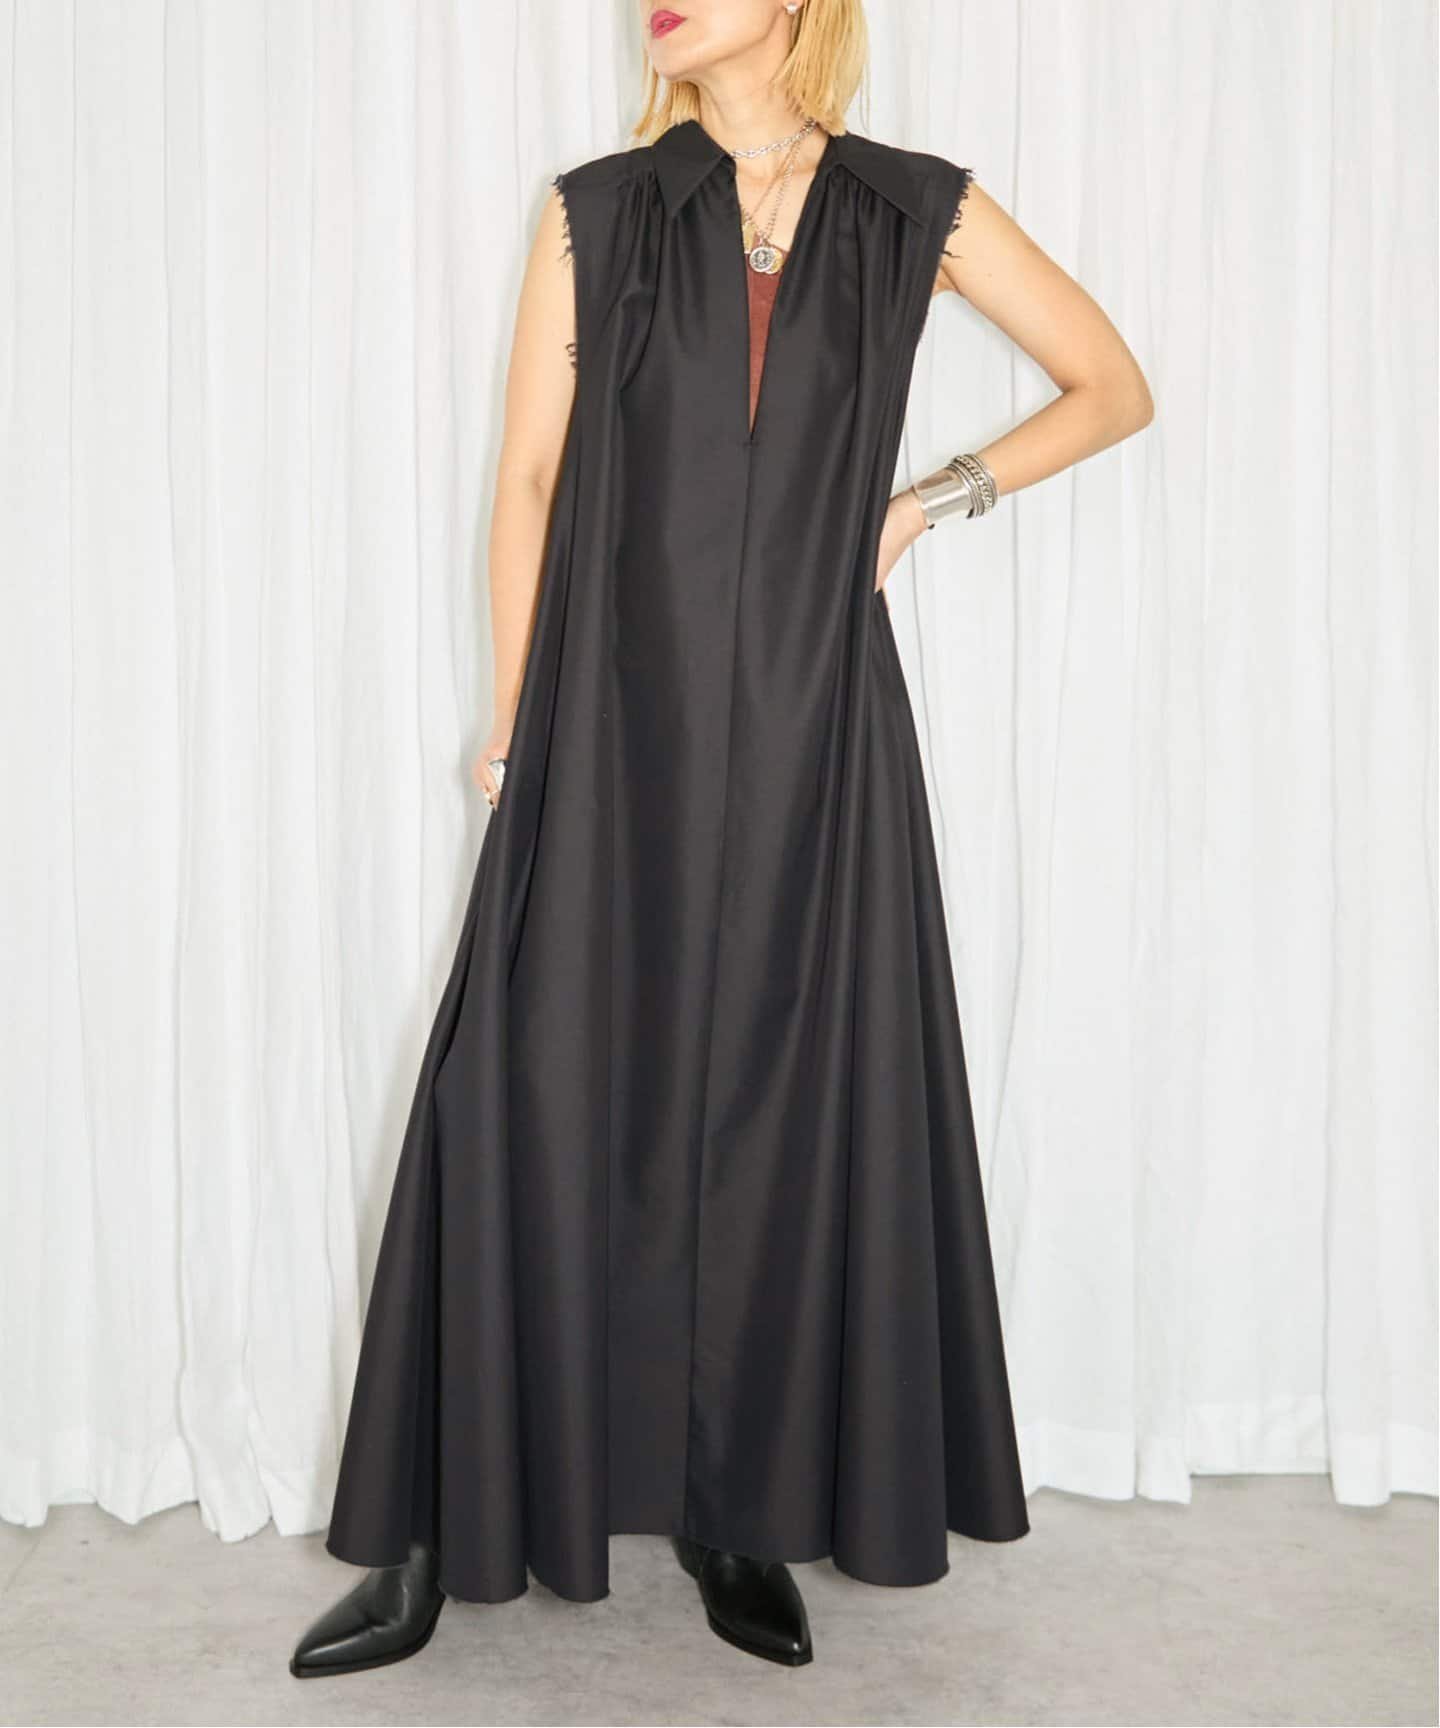 CITYSHOP 《予約》COTTON TWILL DRESS:ワンピース シティーショップ ワンピース・ドレス ワンピース ブラック【送料無料】